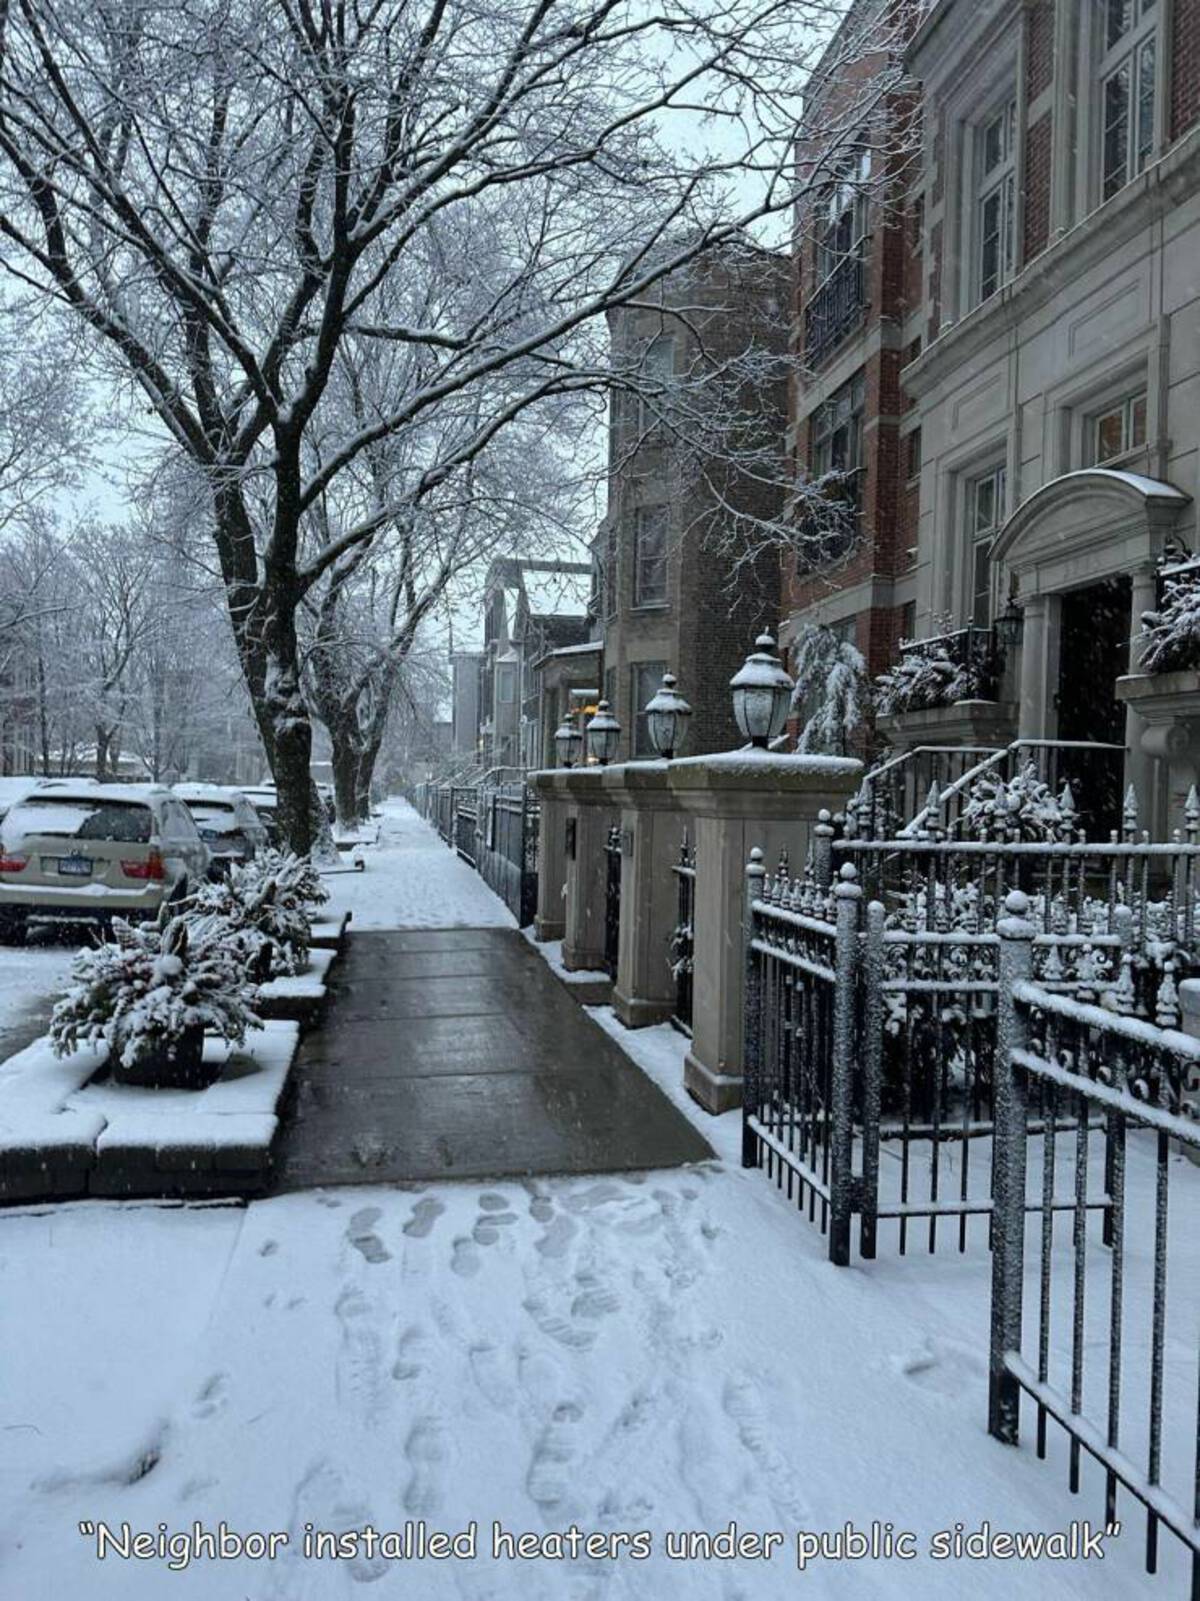 snow - "Neighbor installed heaters under public sidewalk"